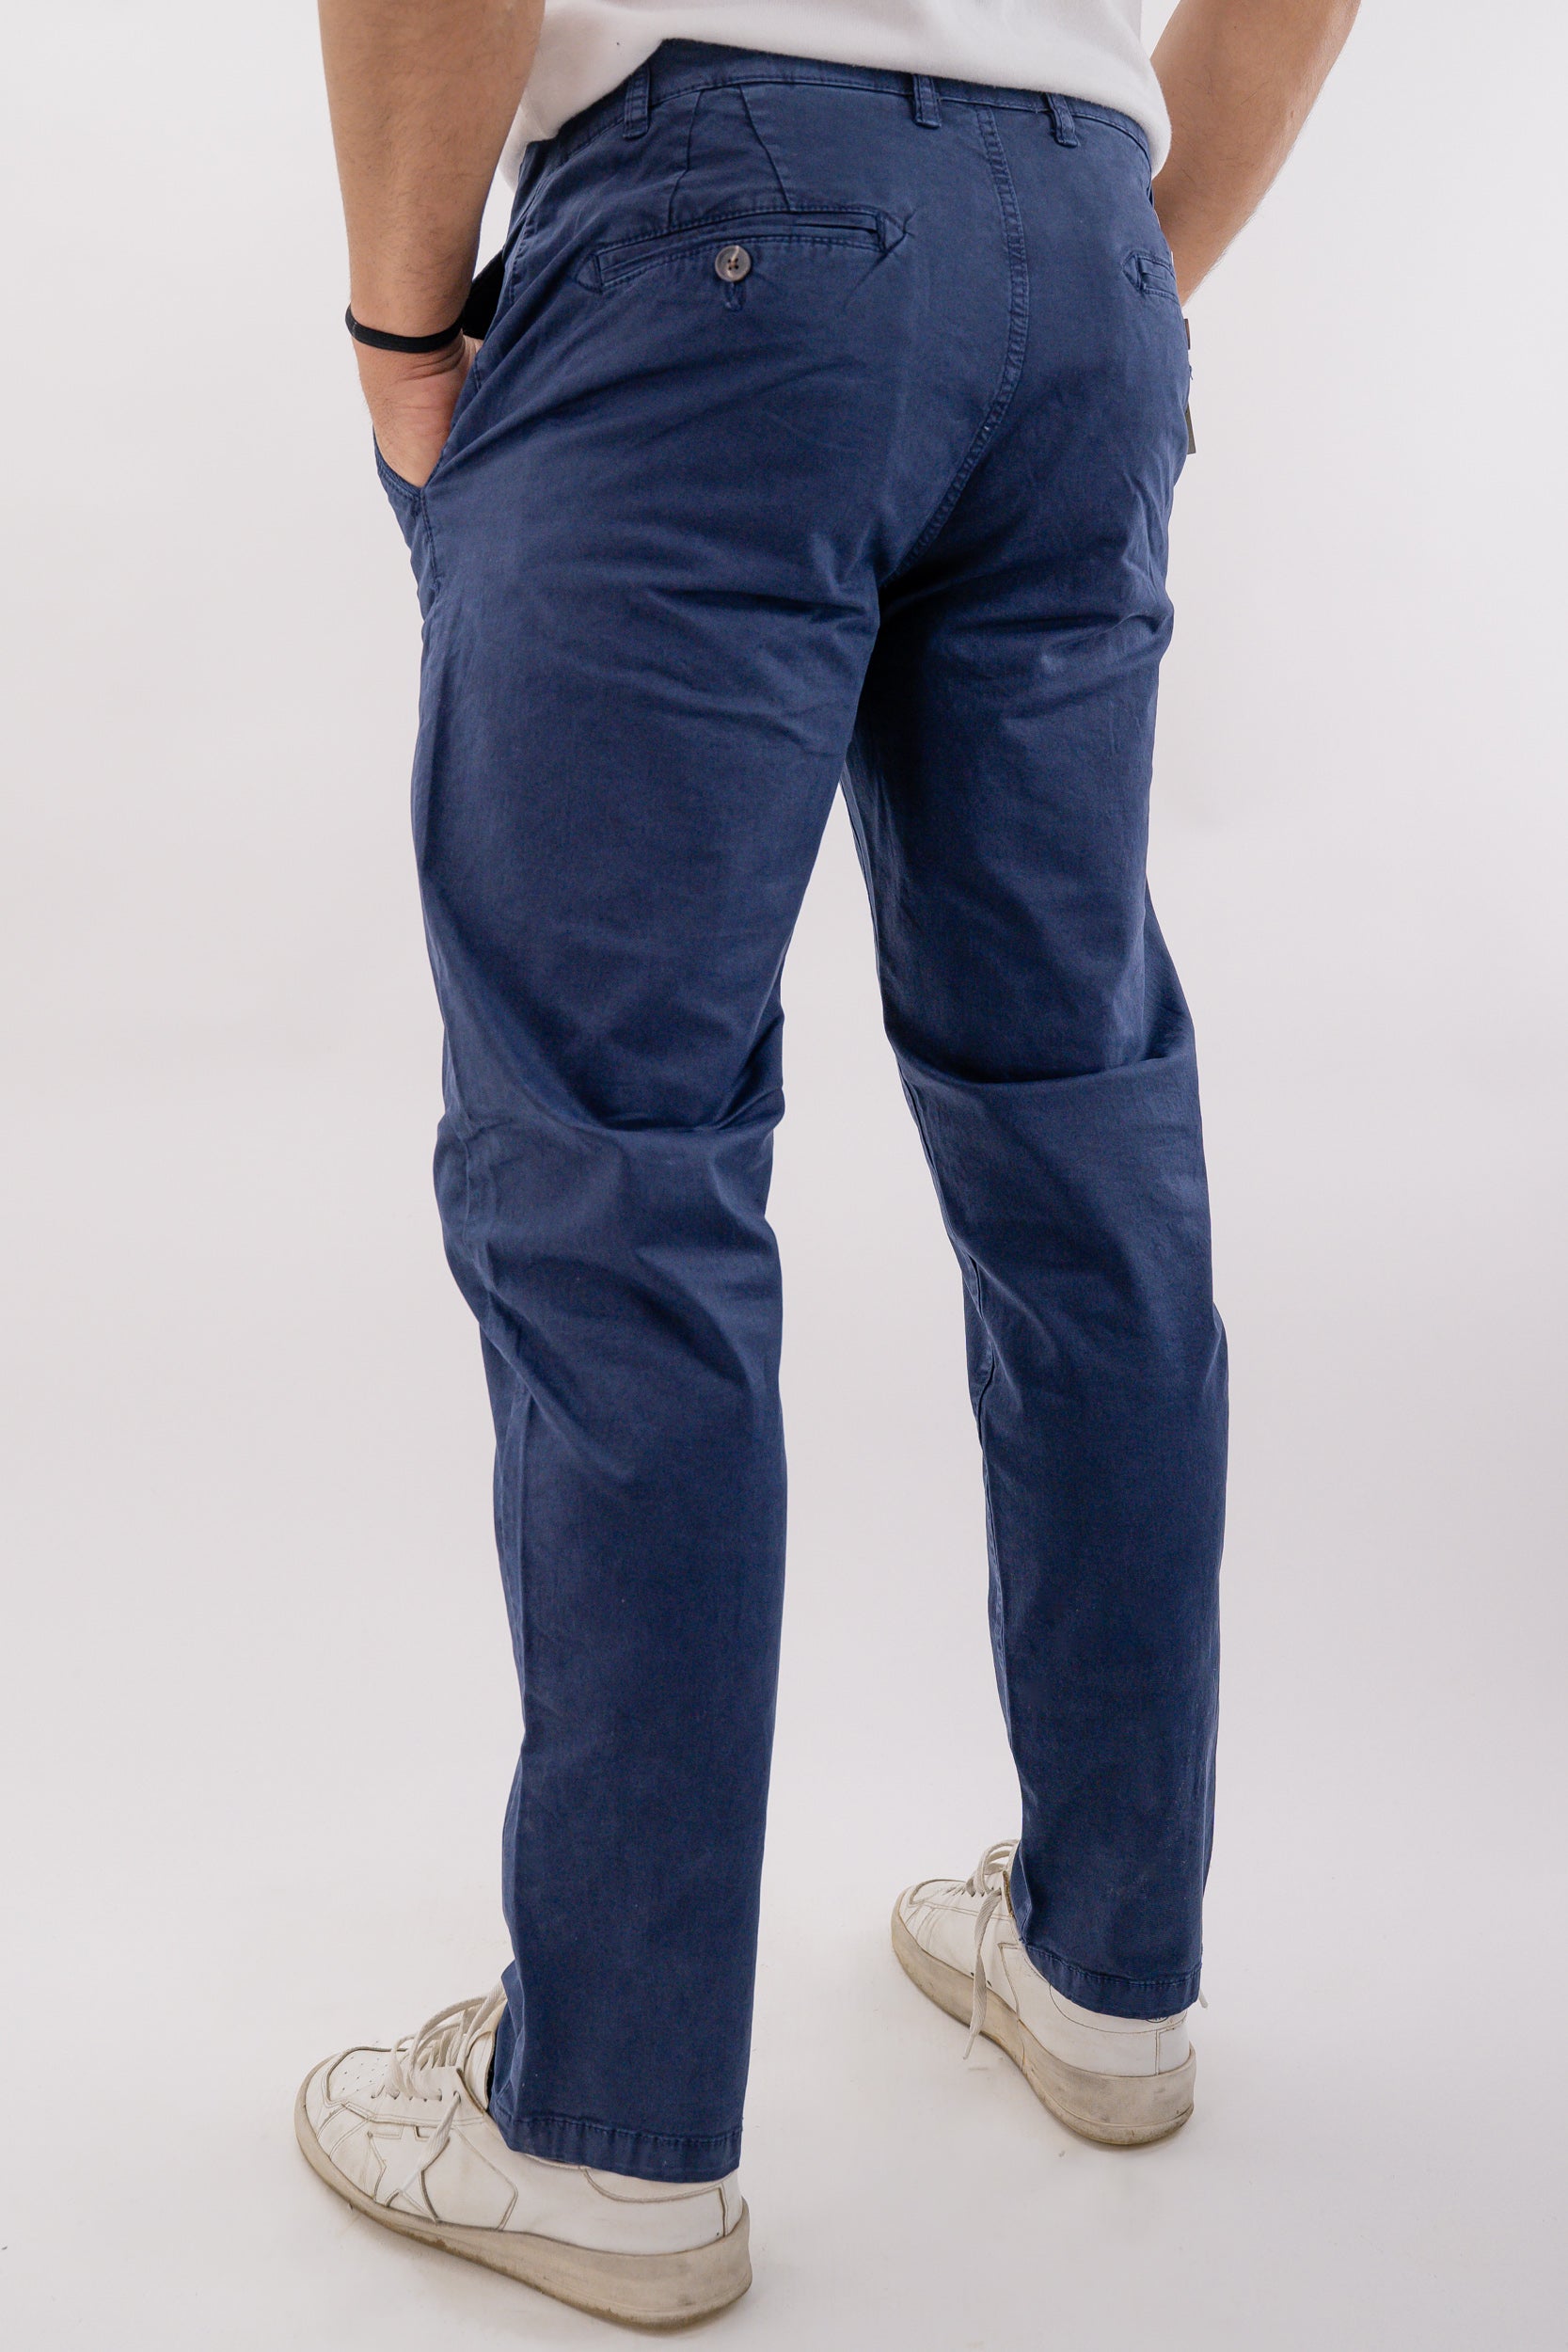 Pantalone tasca chino in cotone elasticizzato